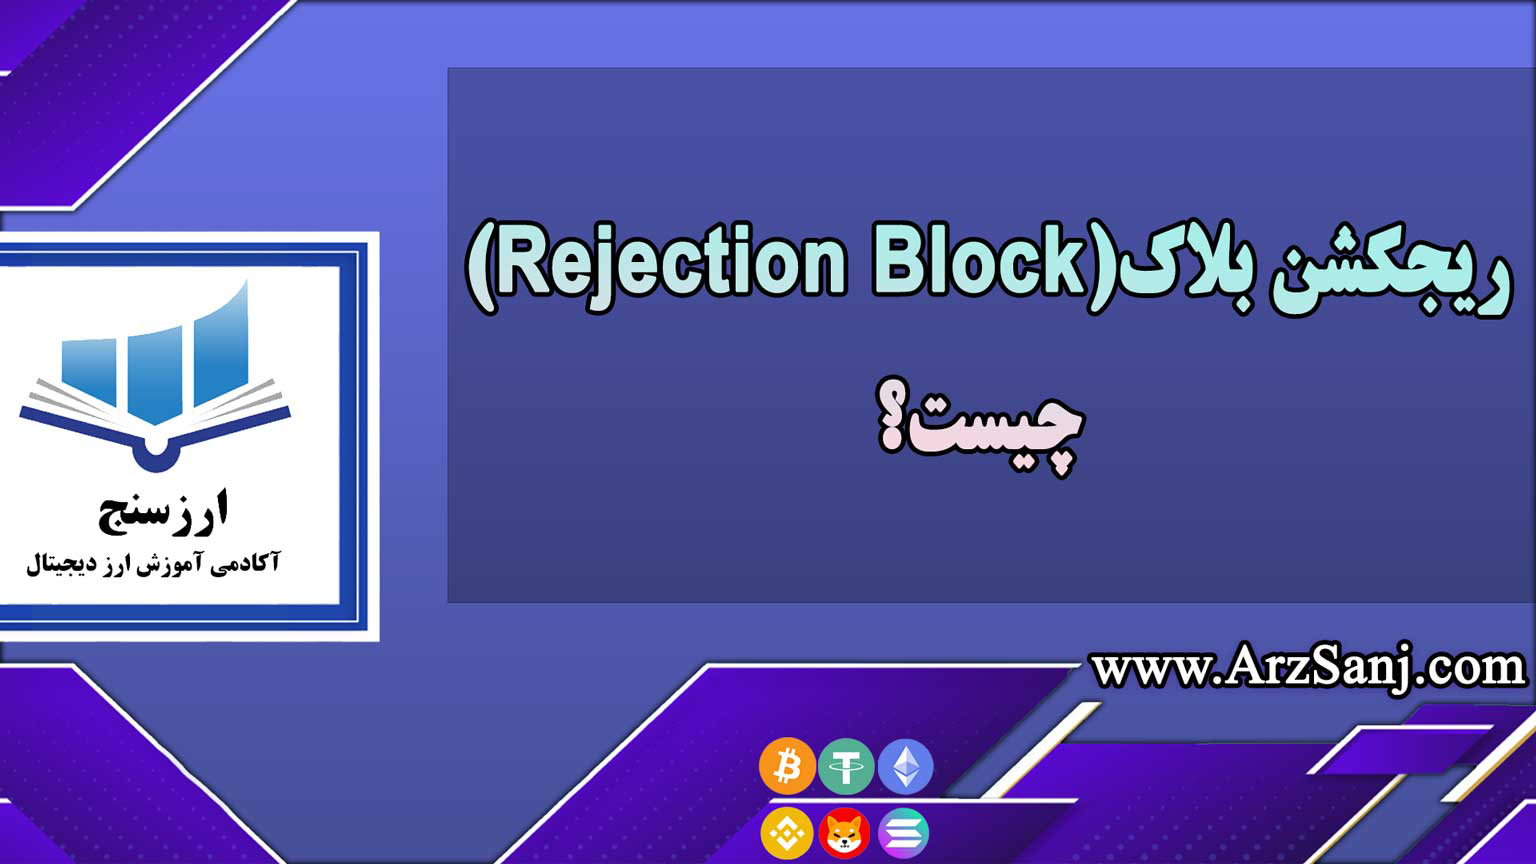 ریجکشن بلاک(Rejection Block) چیست؟